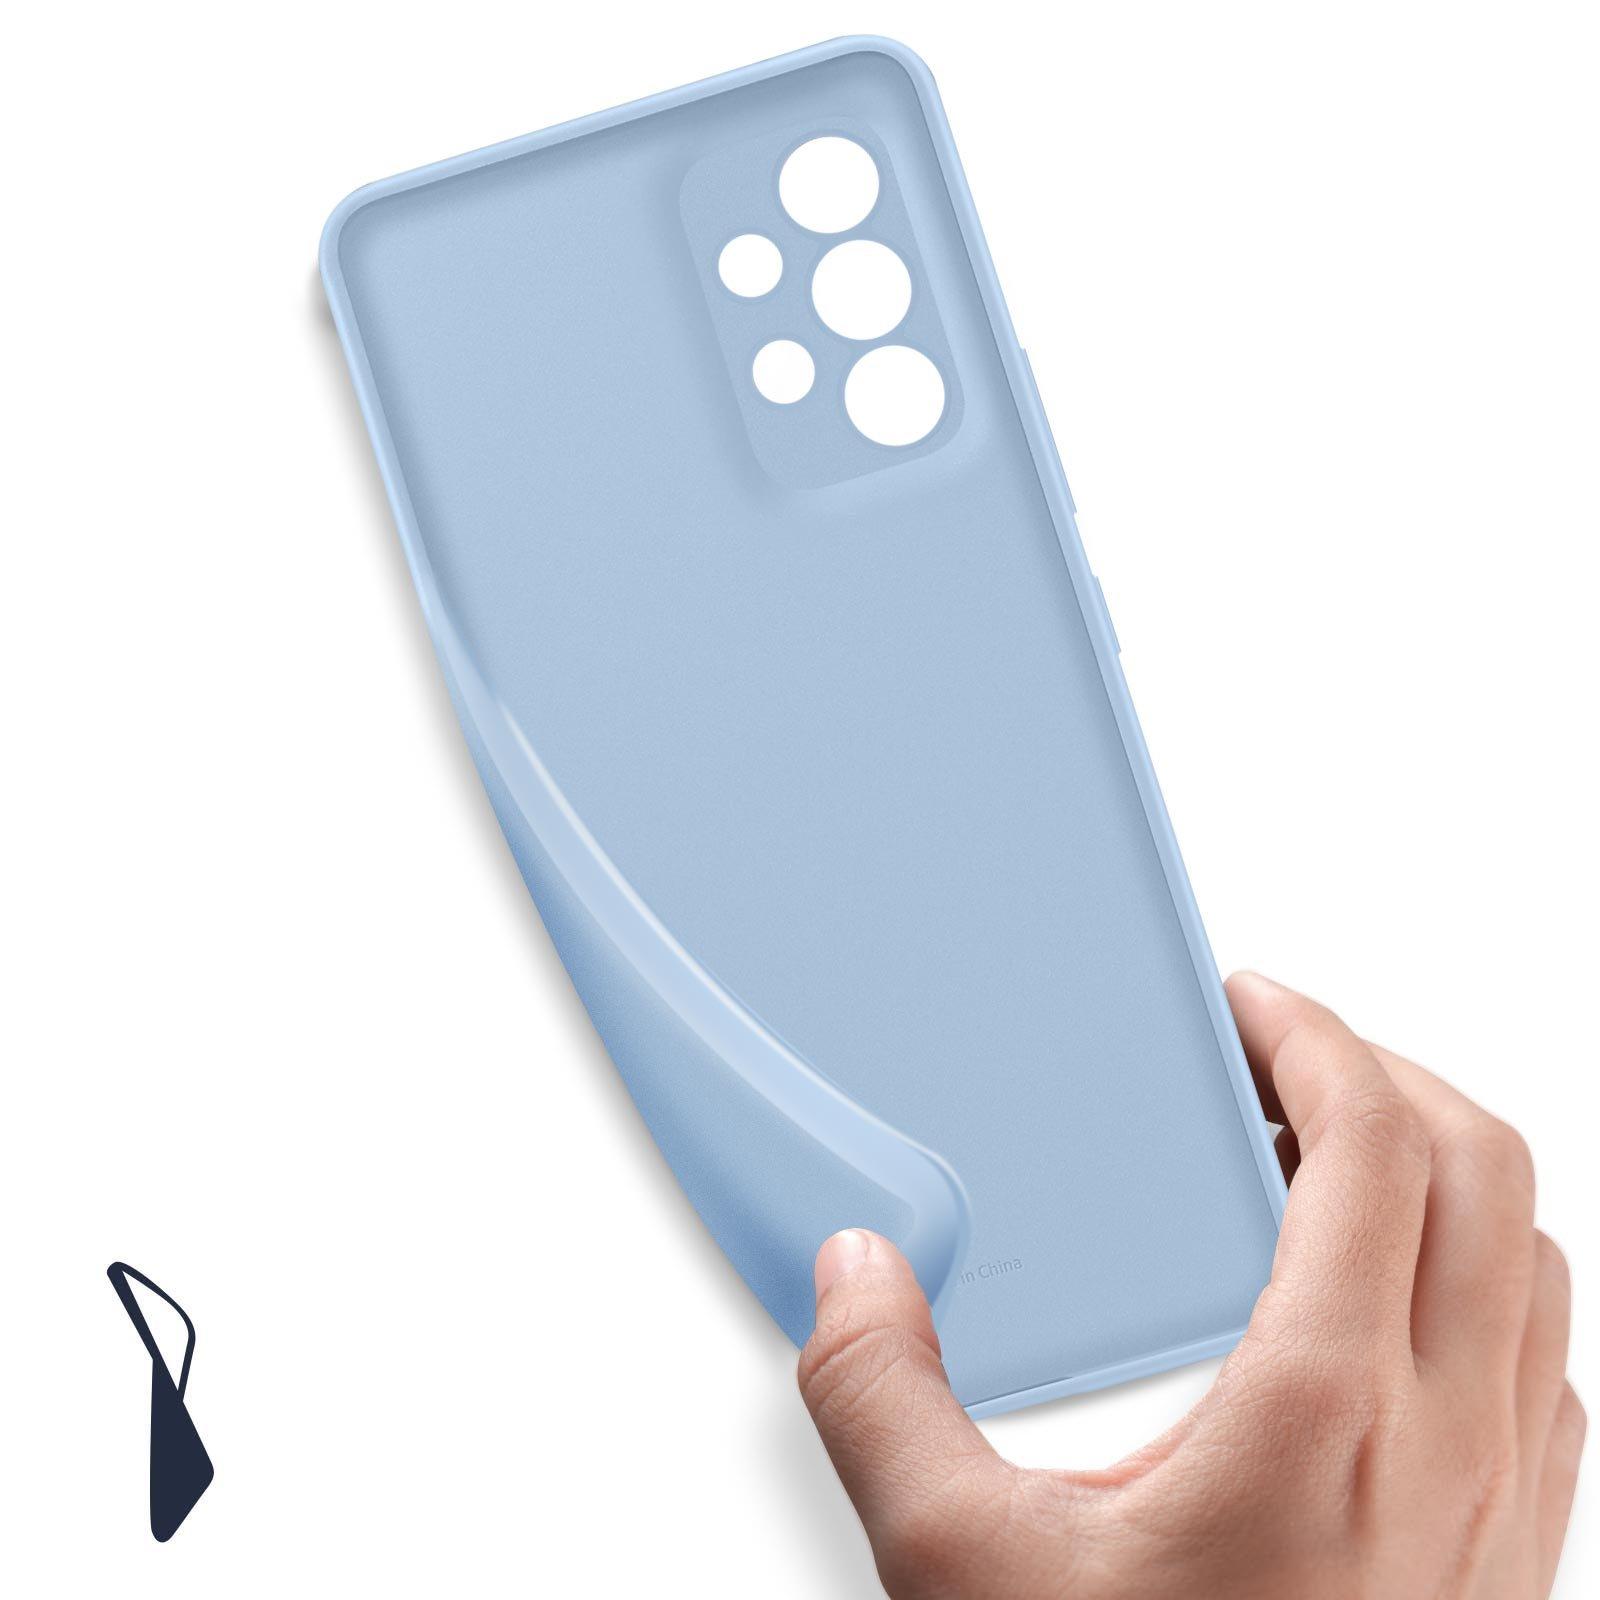 SAMSUNG  Coque Original Galaxy A53 5G Bleu 